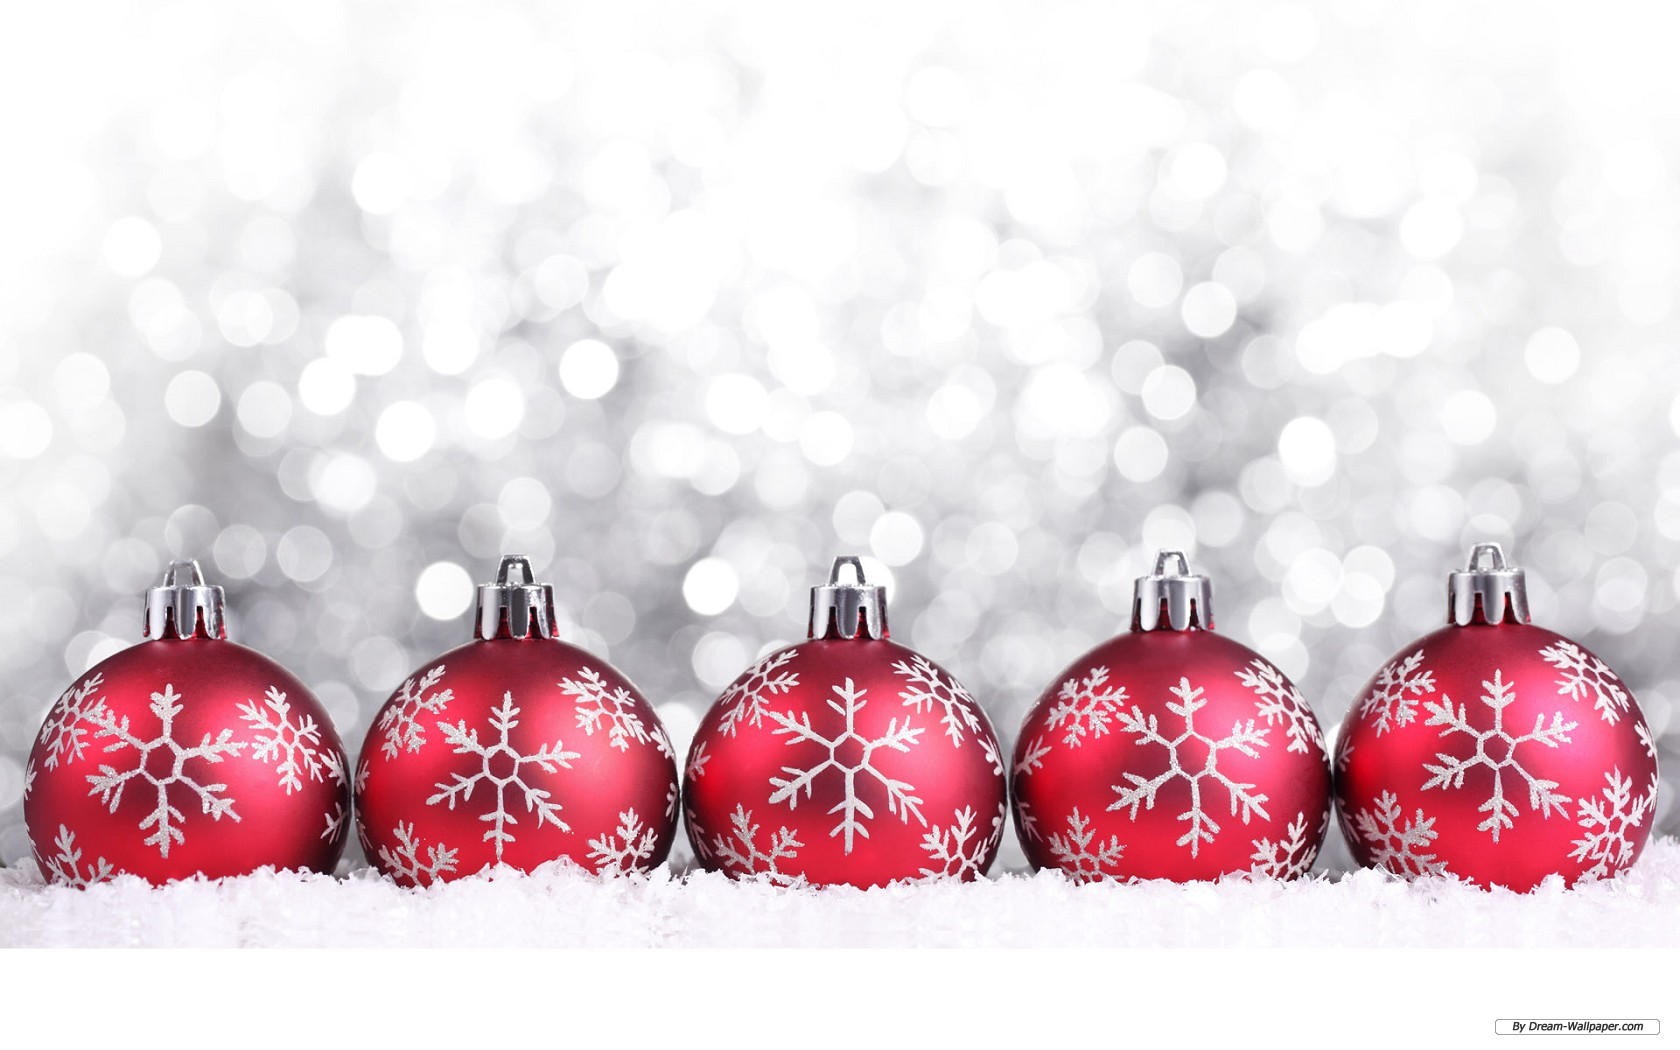 Tải hình nền Giáng sinh miễn phí với độ phân giải 1680x1050 cao sẽ giúp cho hình nền trông sắc nét và chân thực hơn. Các hình ảnh về cây thông, ông già noel hay ngôi nhà tuyết trắng sẽ đưa bạn đến với không gian lễ hội thật đẹp và ấm áp.